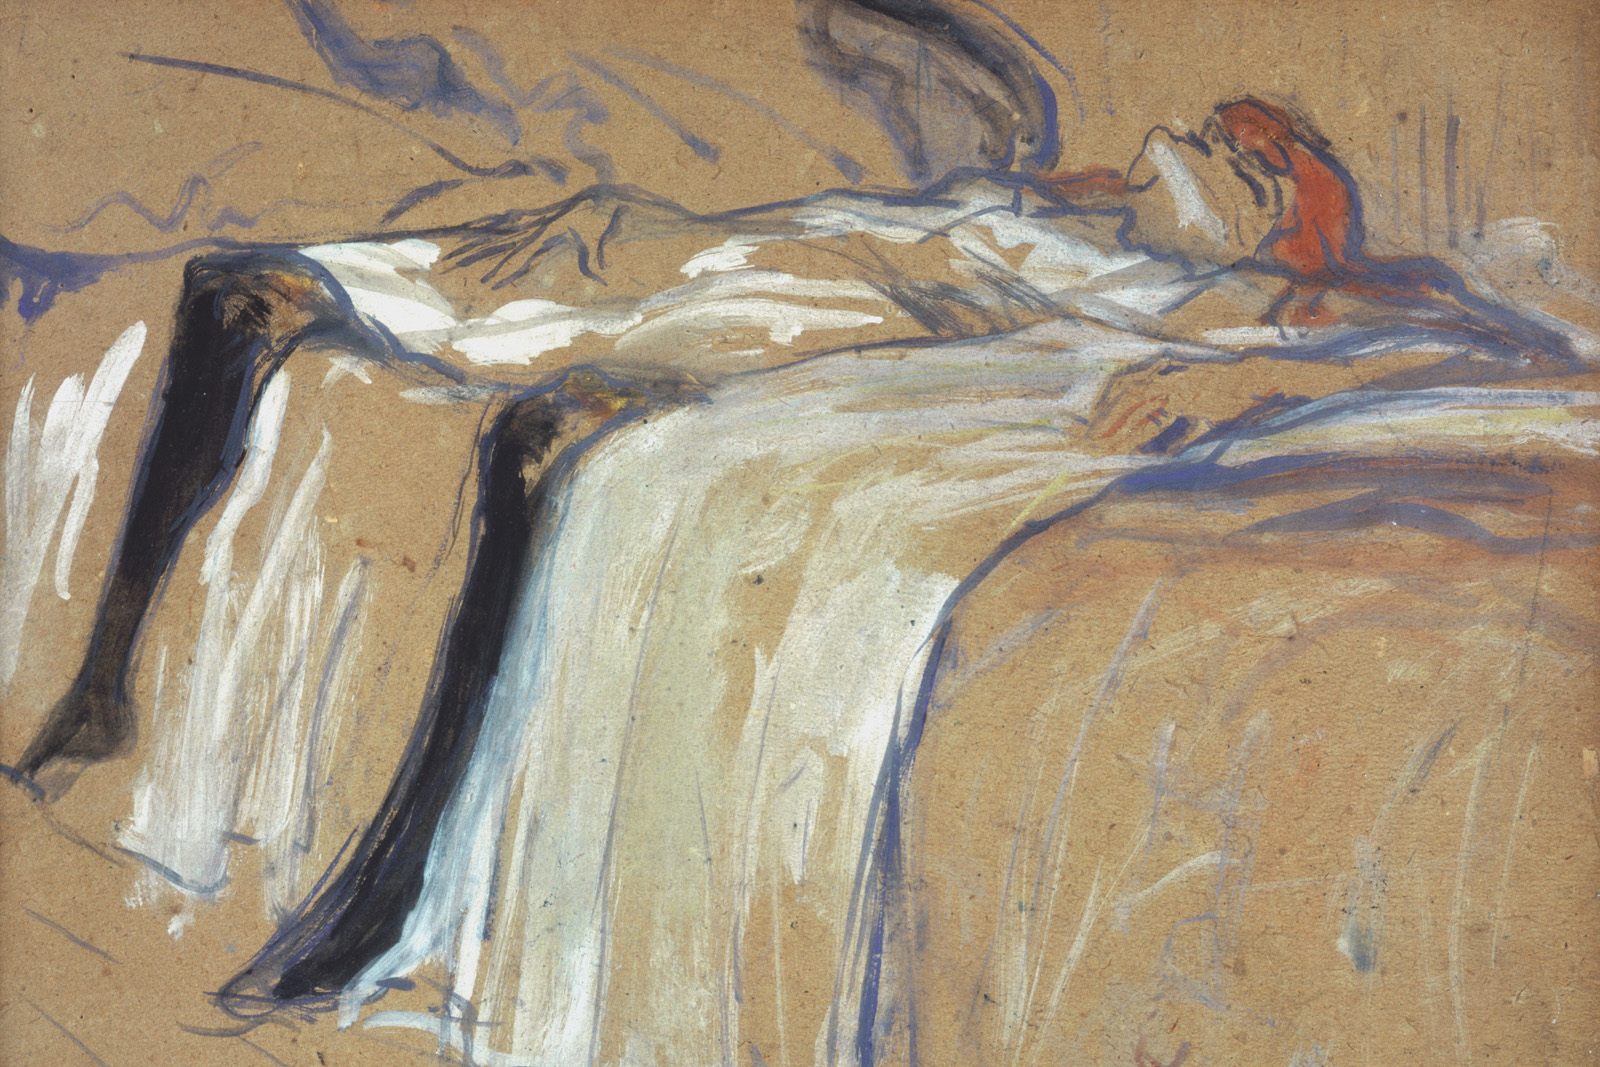 Sola by Henri de Toulouse-Lautrec - 1896 - 31 x 40 cm Musée d'Orsay